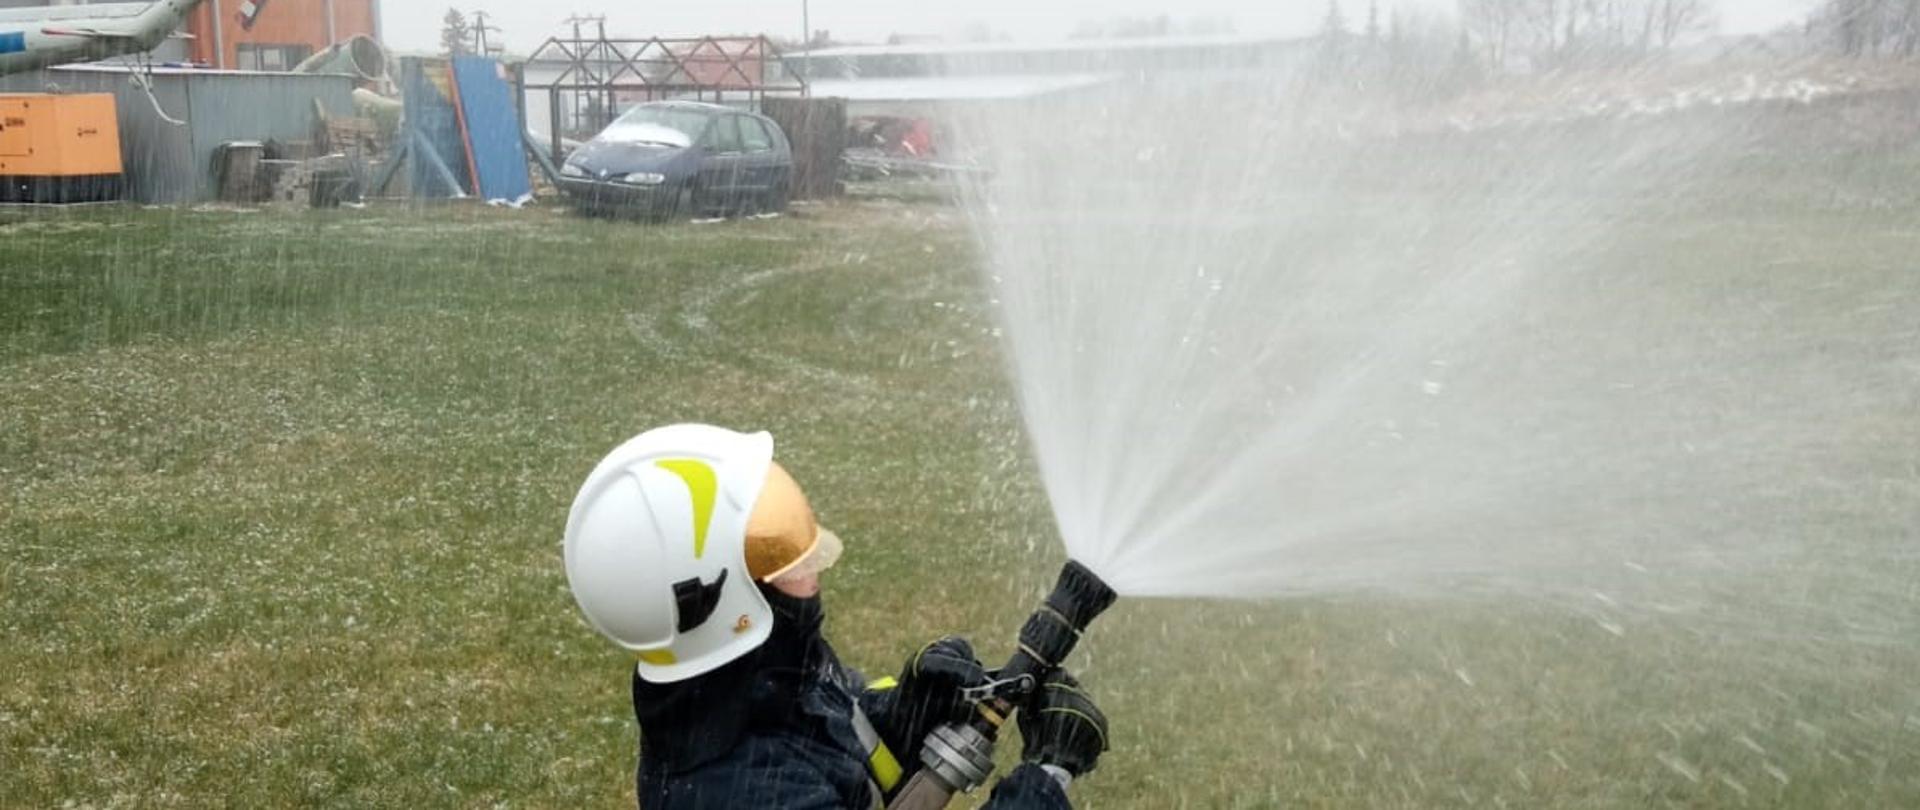 Zdjęcie przedstawia jeden z elementów egzaminu praktycznego szkolenia podstawowego strażaka ratownika Ochotniczych Straży Pożarnych, realizowanego w Komedzie Powiatowej Państwowej Straży Pożarnej w Gołdapi, polegającego na weryfikacji umiejętności i znajomości w zakresie prowadzenia działań gaśniczych (w szczególności w formie operowania prądami wody)